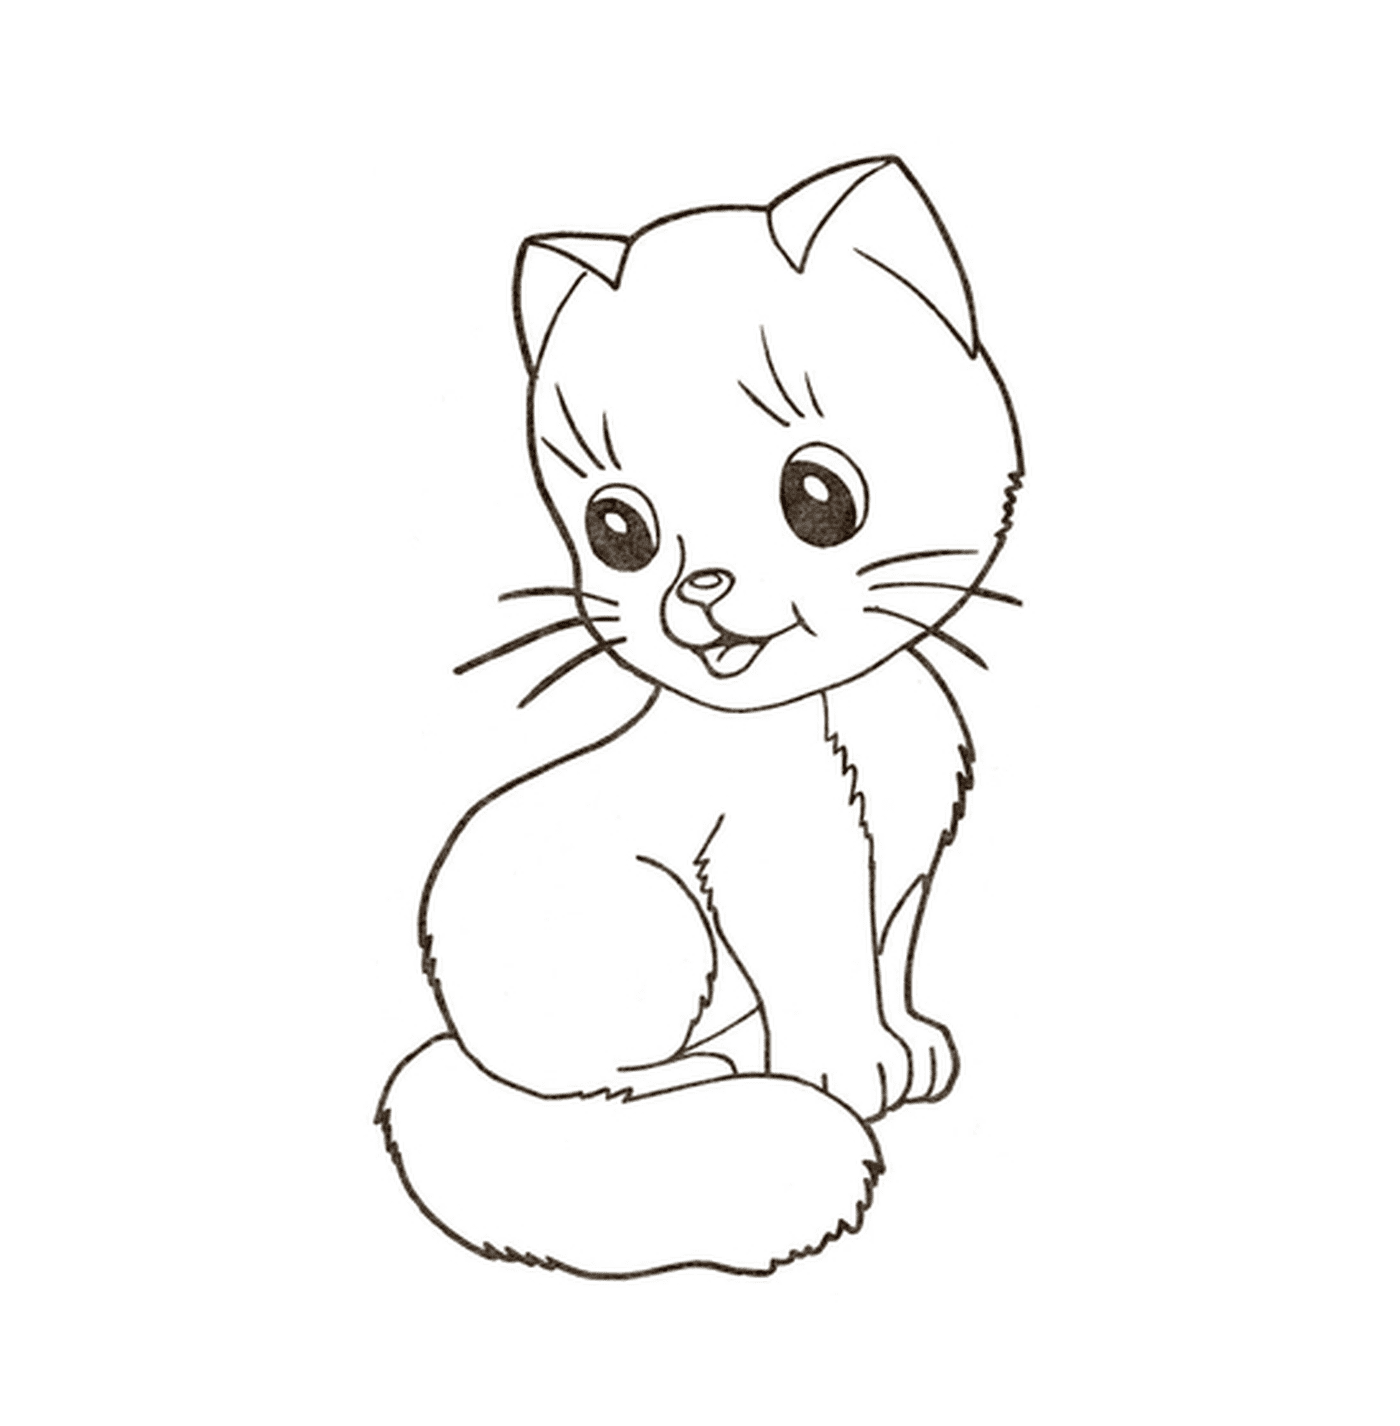  A kitten 